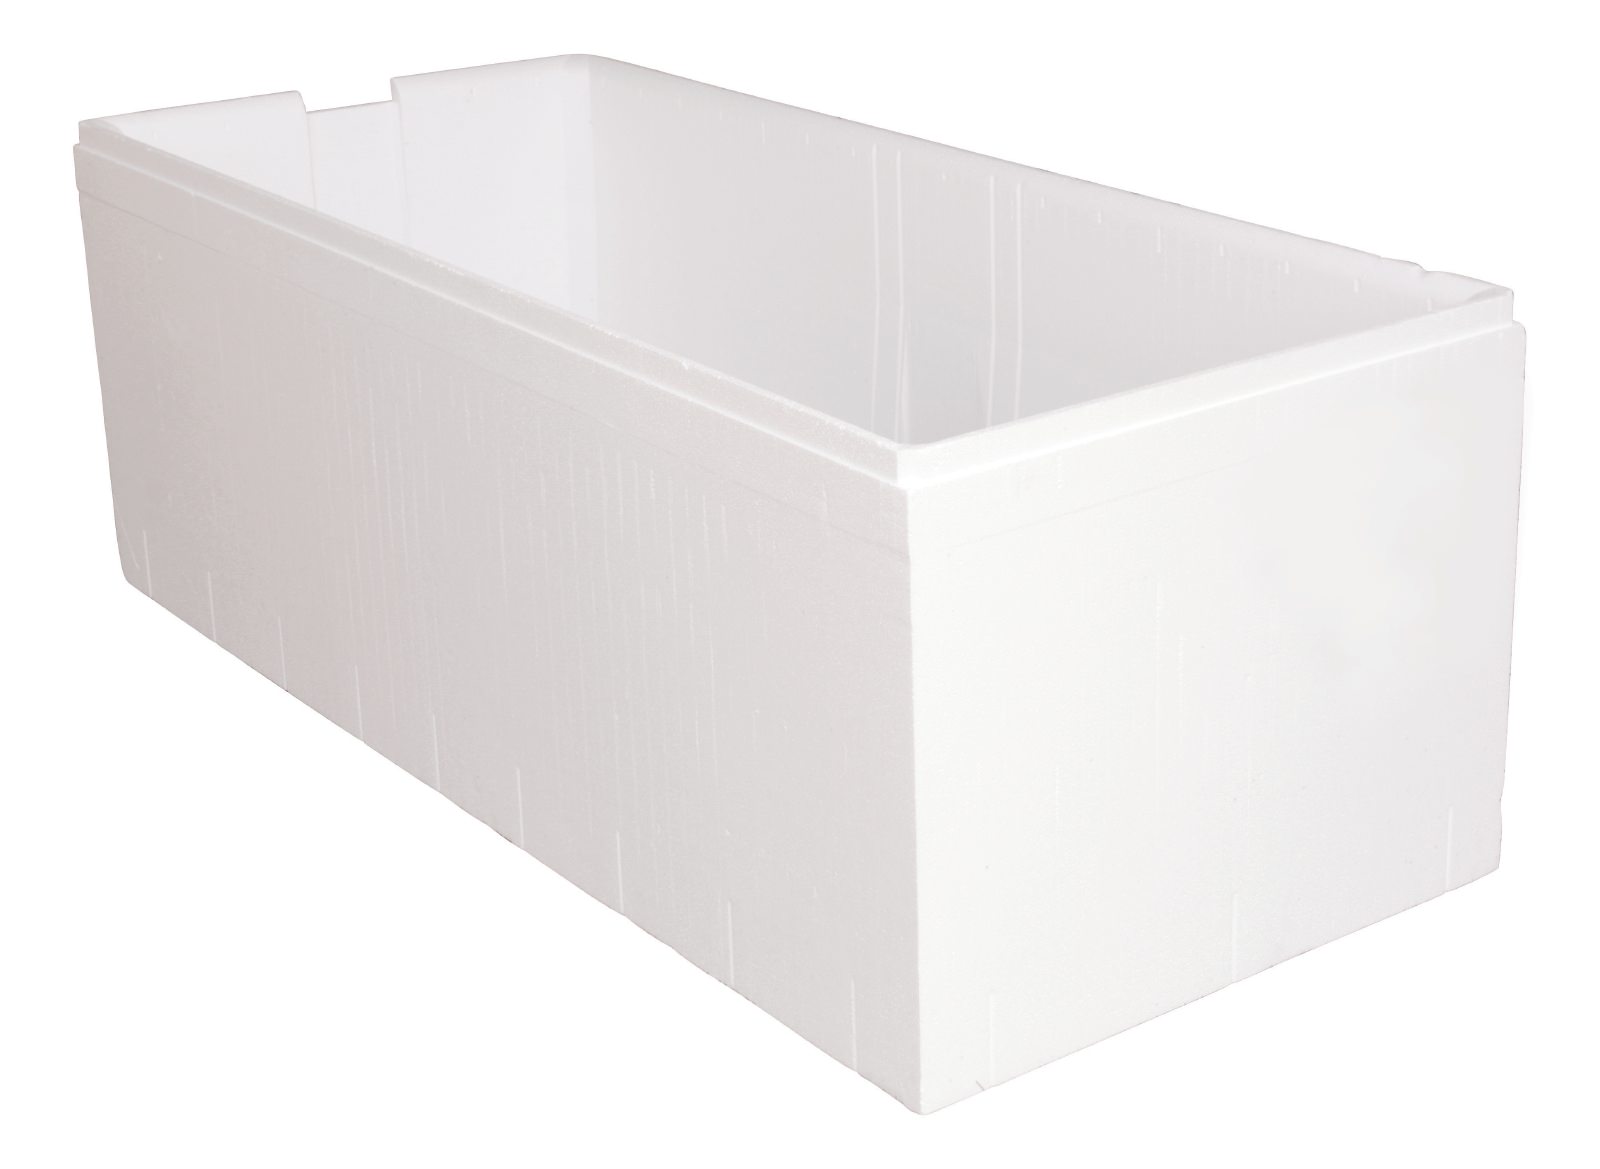 Styropor-Wannenträger Modern Square 2 in Weiß, 190 x 90 cm